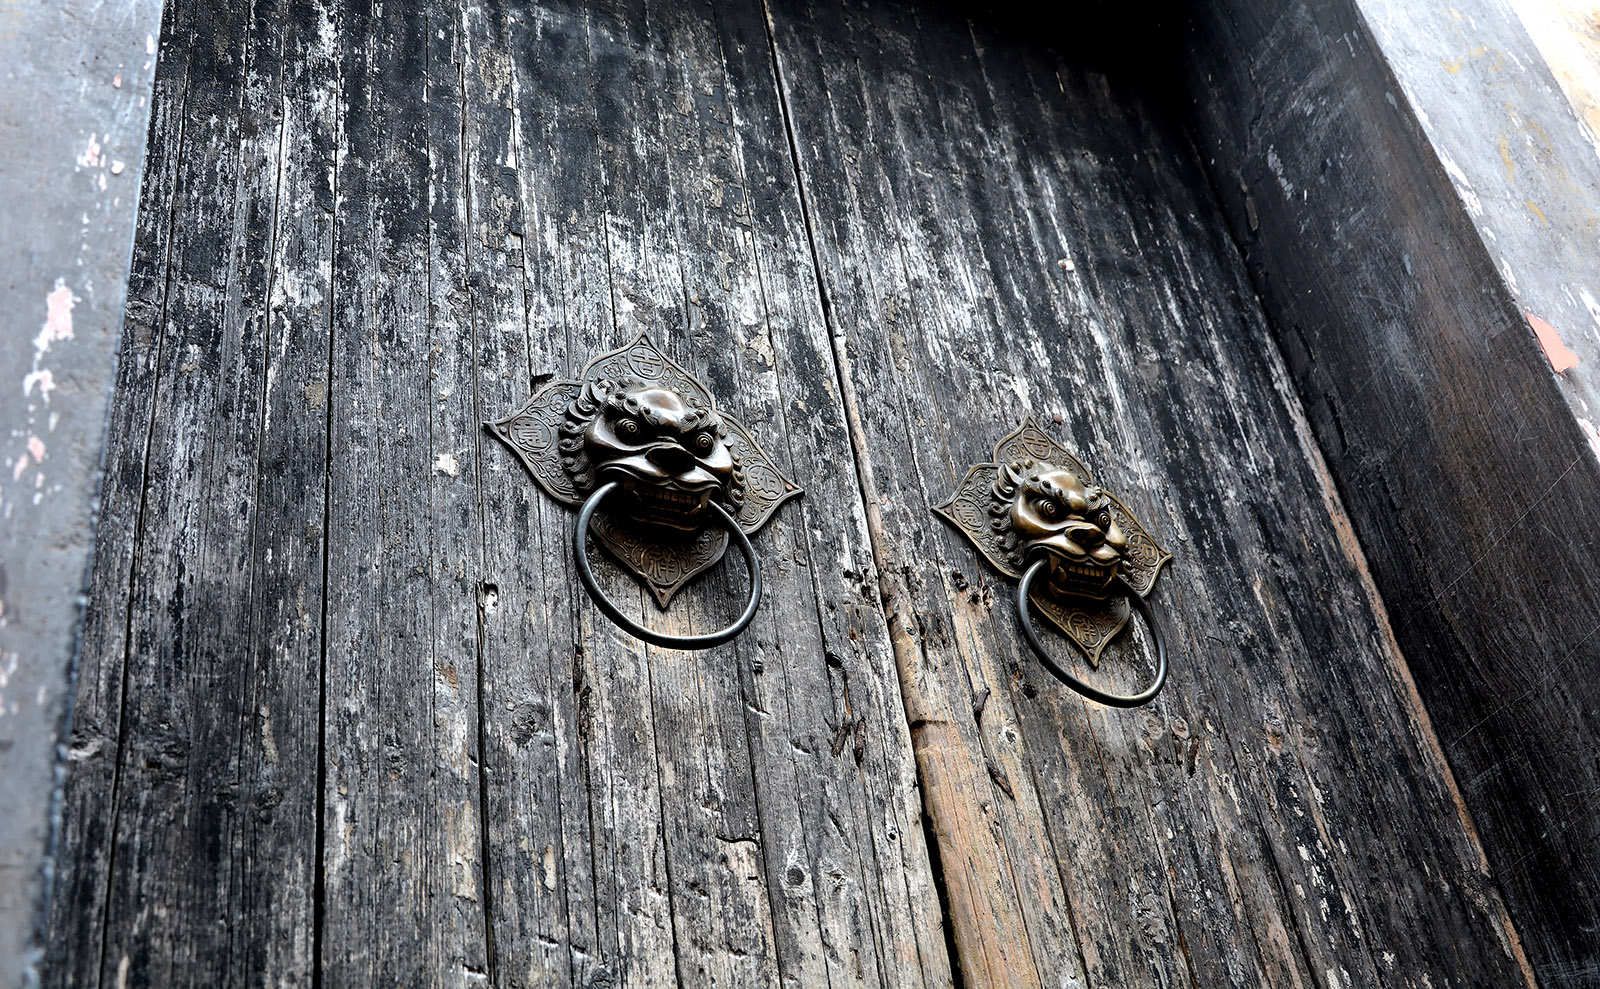 distressed wooden door with elaborate lion head door knocker